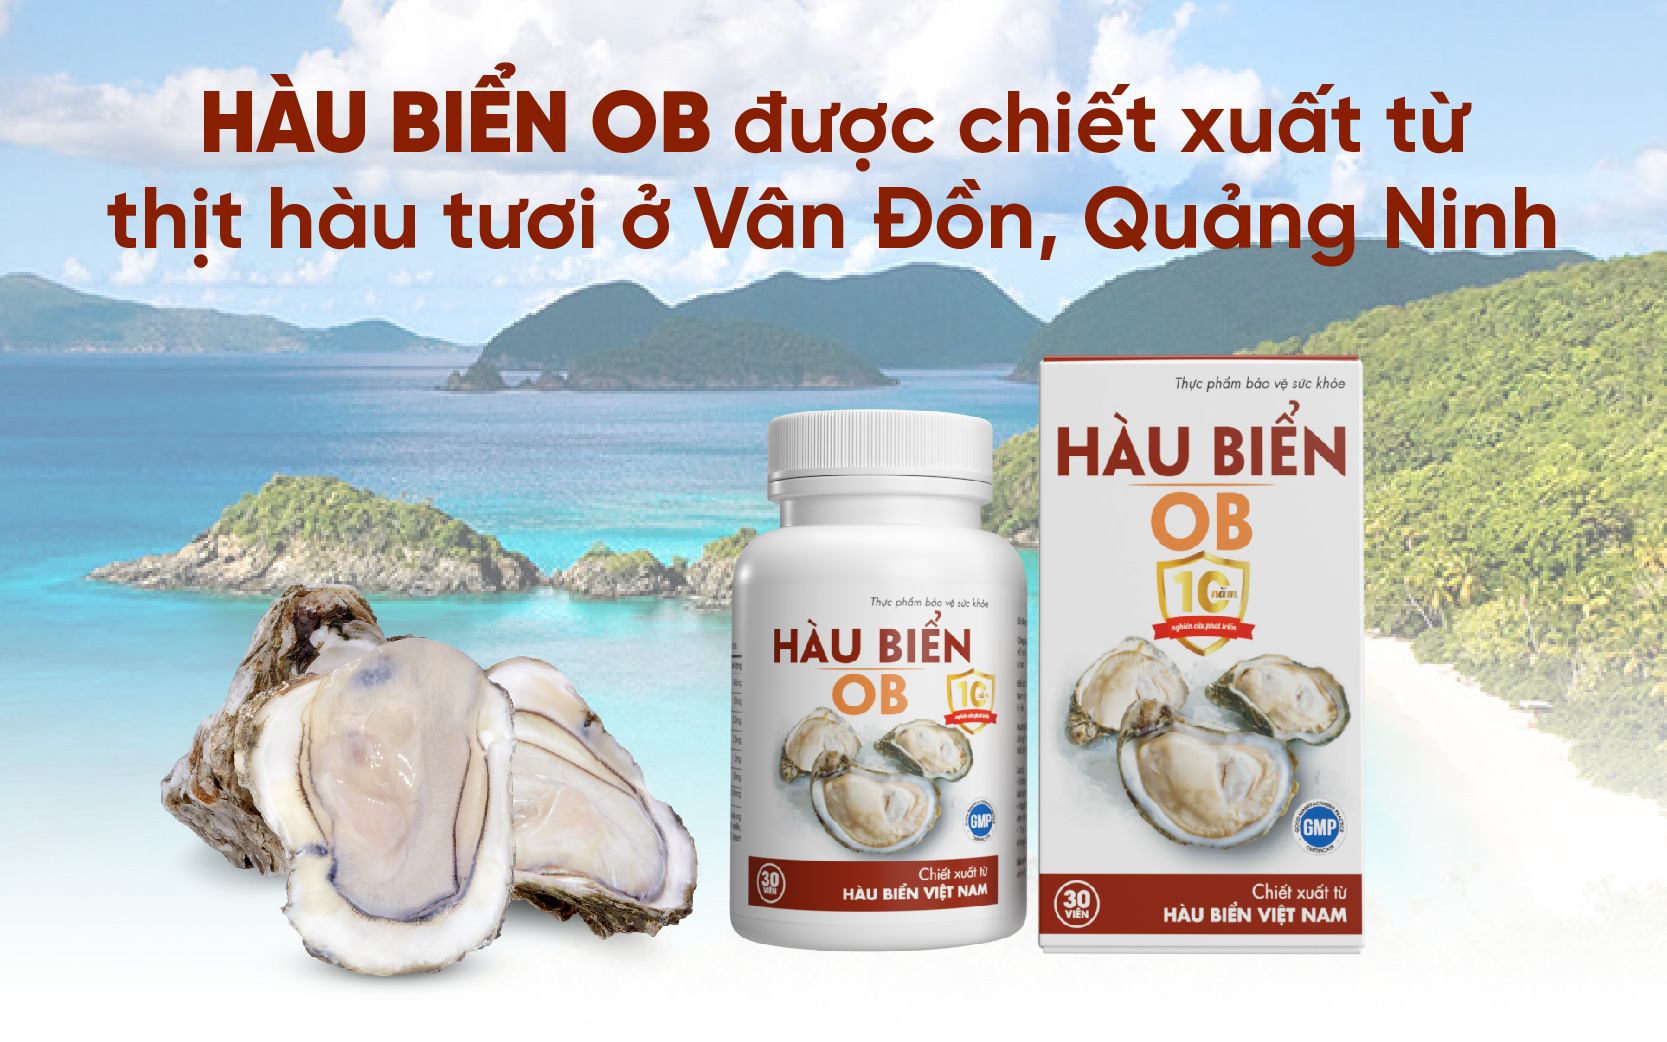 Nguyên liệu chính của Hàu biển OB là thịt hàu sữa tươi được nuôi trồng tại vùng biển Vân Đồn, Quảng Ninh